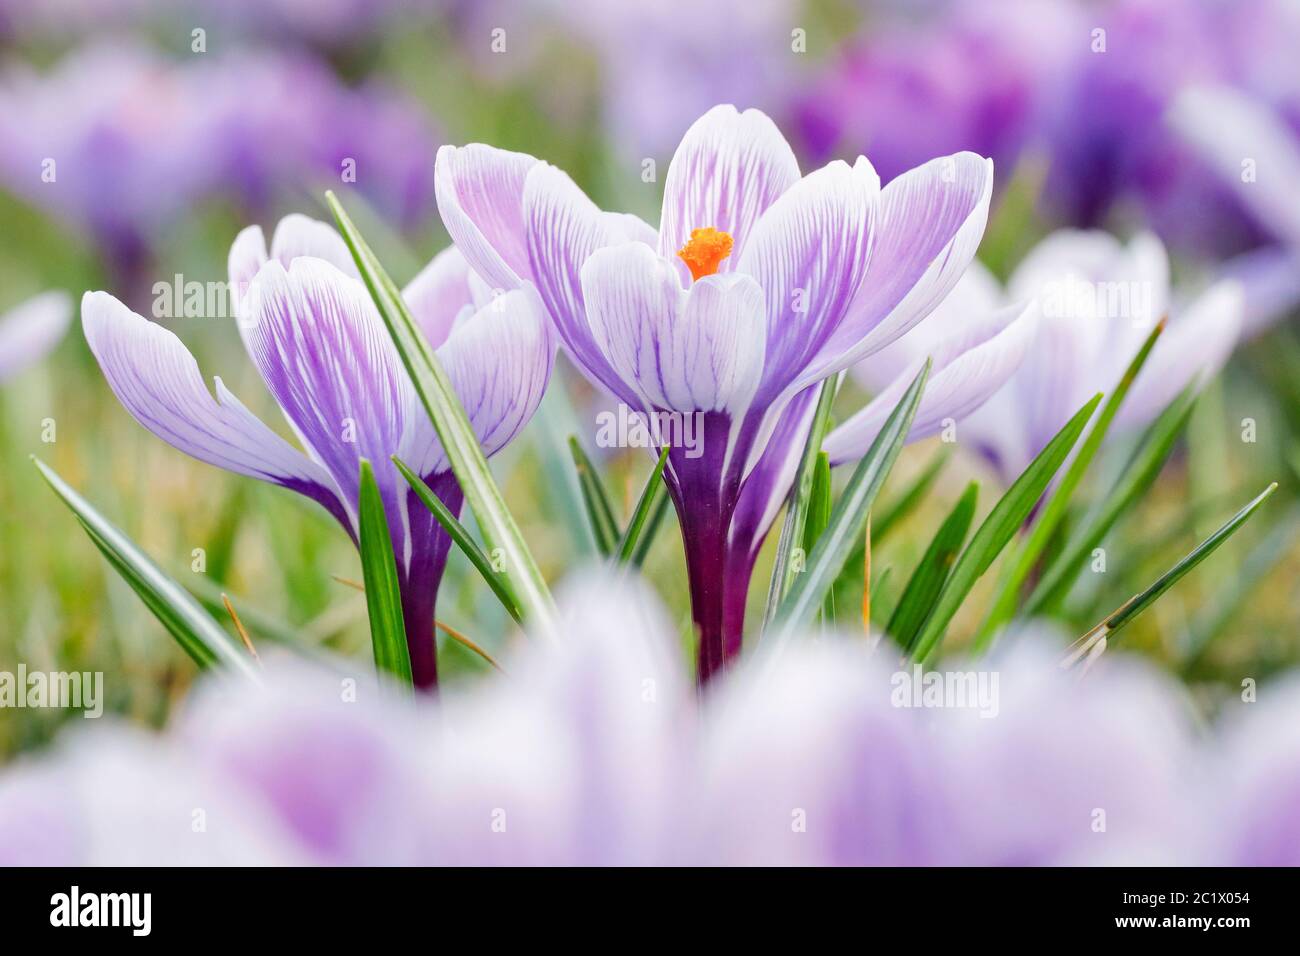 Dutch crocus, spring crocus (Crocus vernus, Crocus neapolitanus), flowers in spring, Switzerland Stock Photo